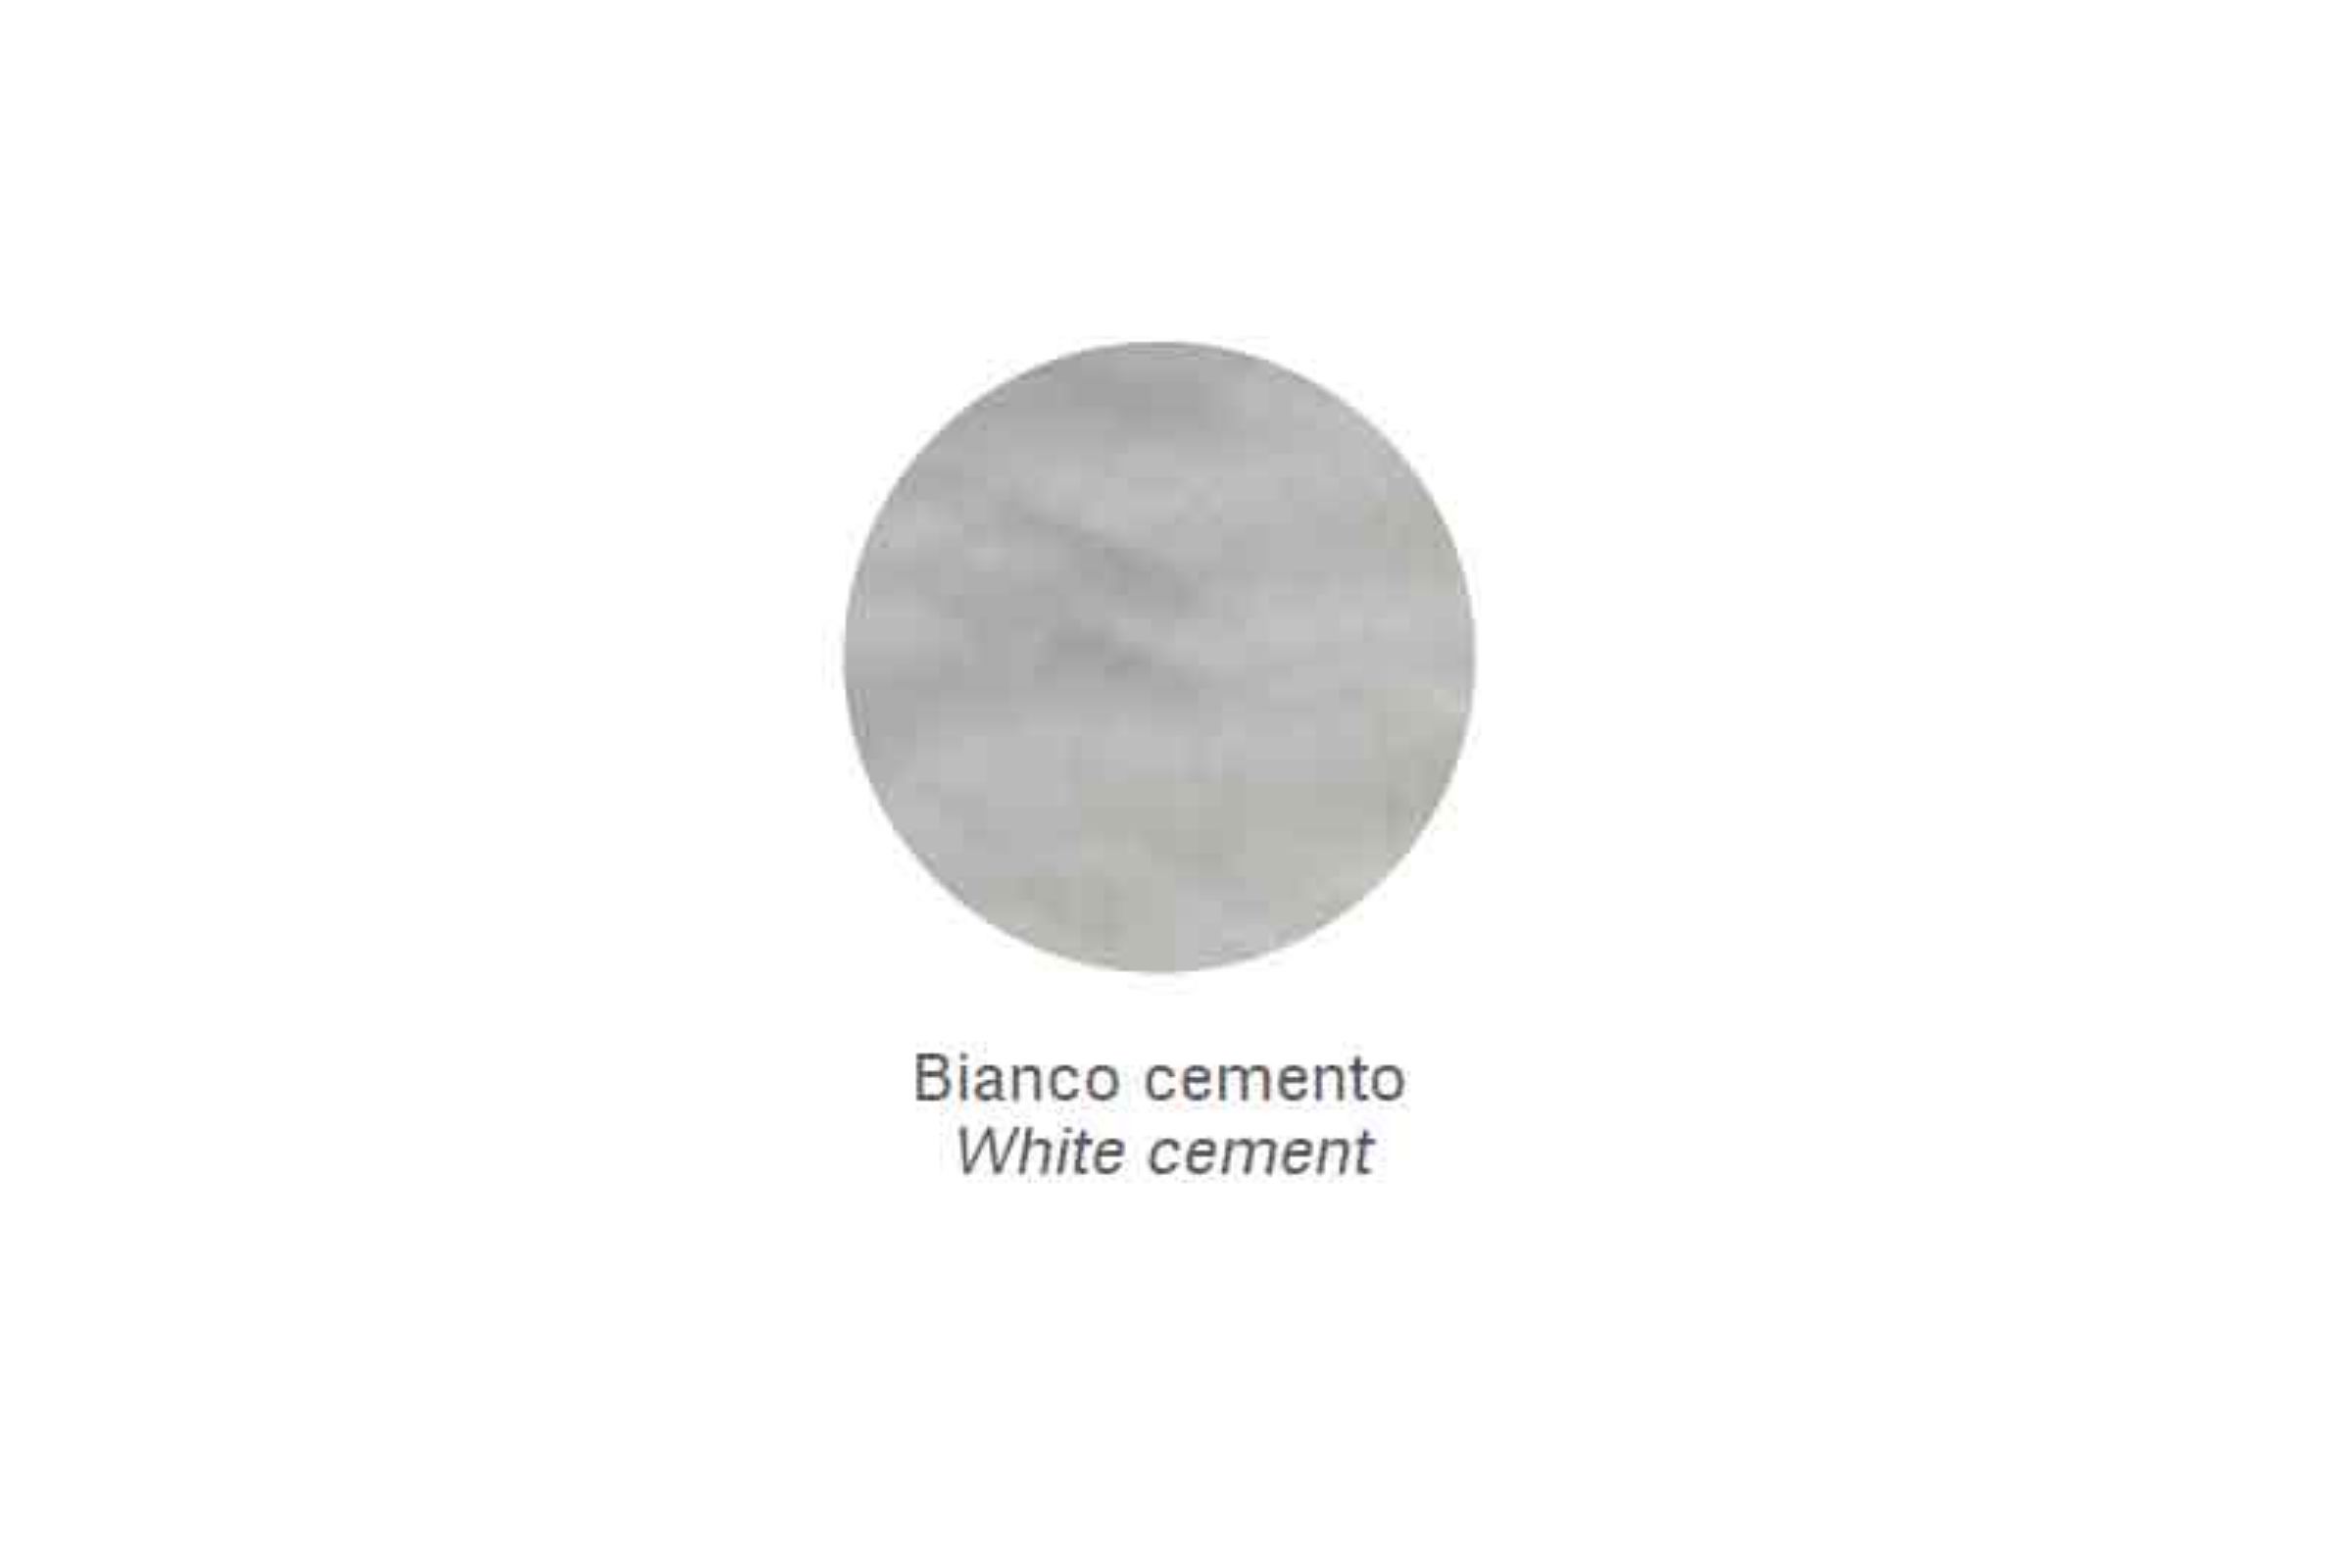 Mensola Zen /70 - Mensola Zen /70 Bianco cemento